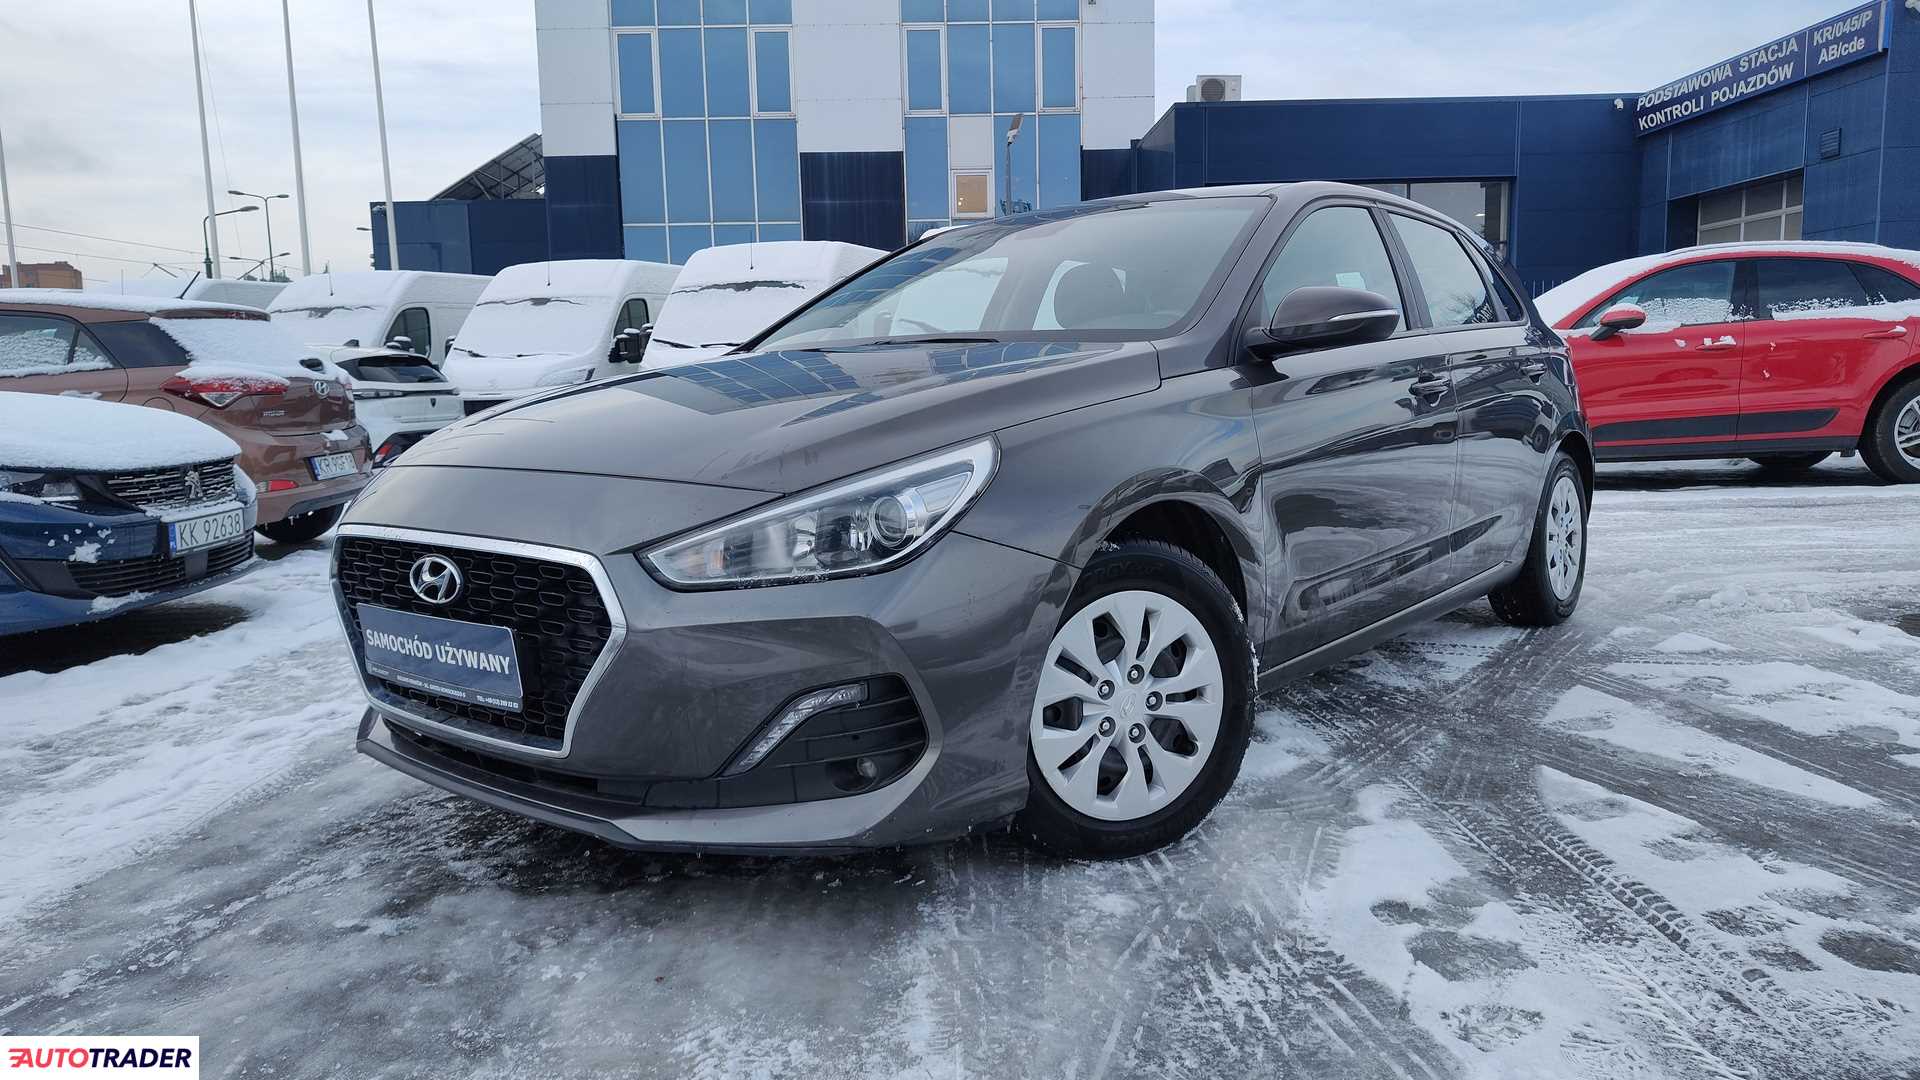 Hyundai i30 2019 1.4 100 KM